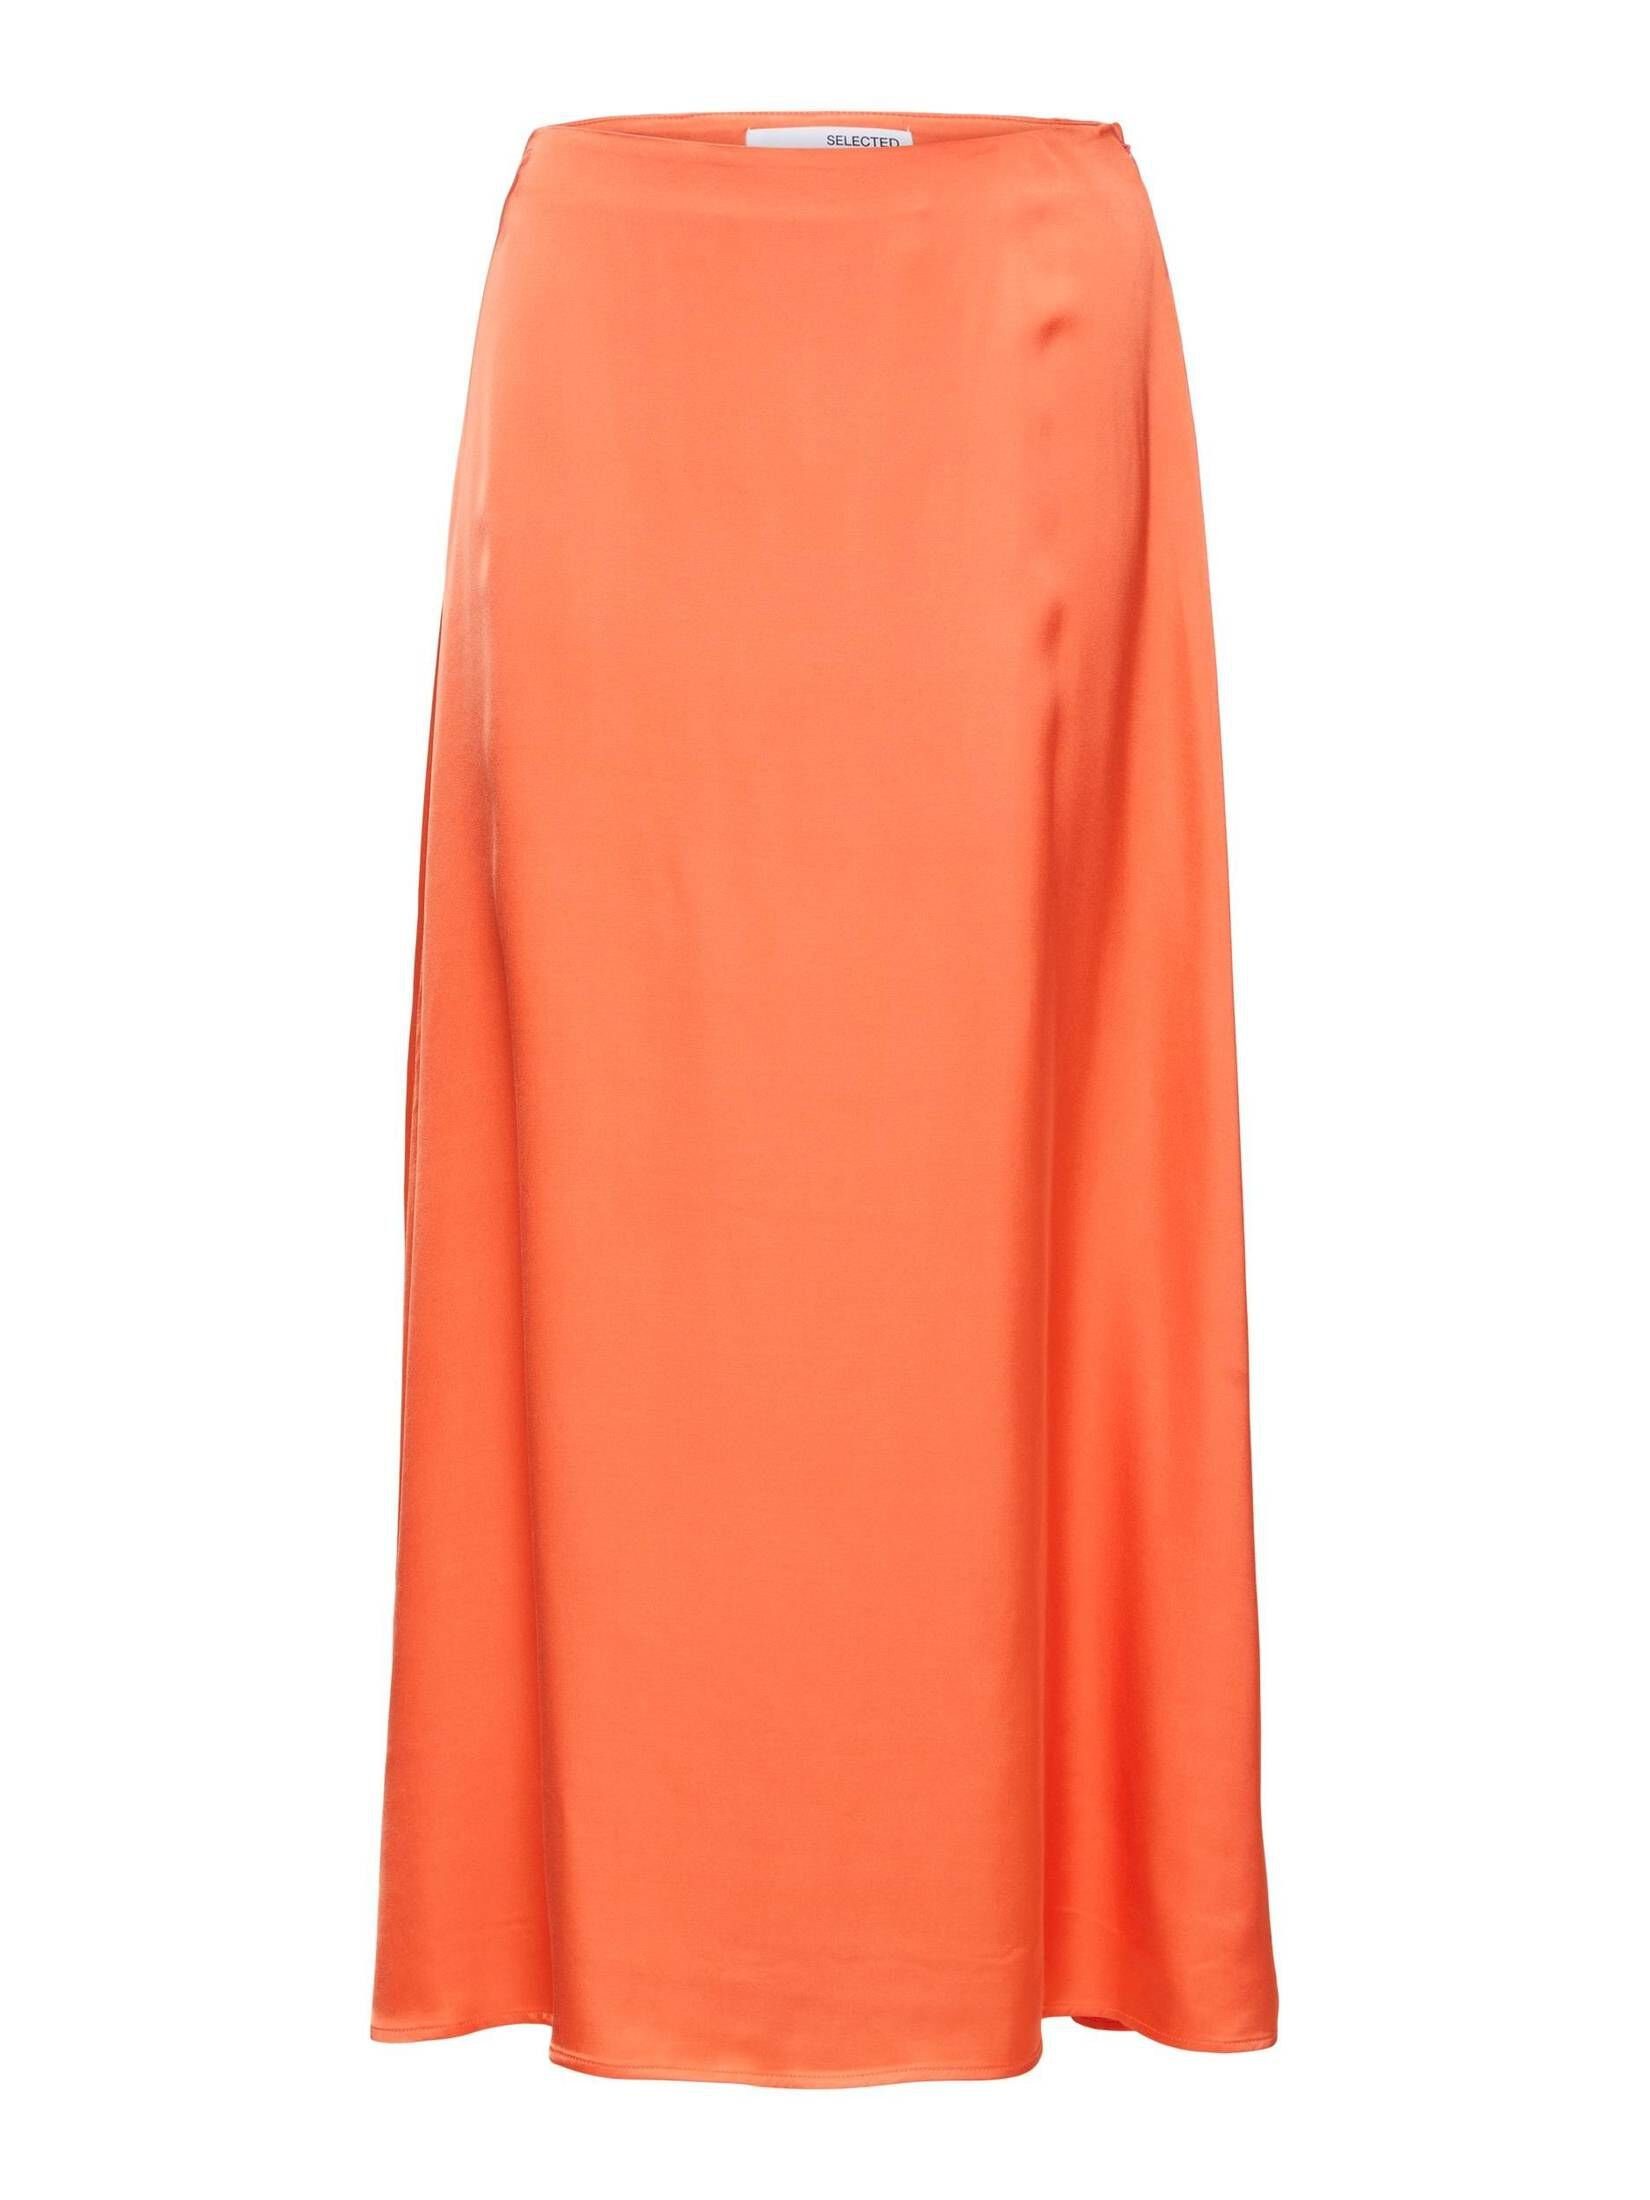 Orangene Midiröcke für Damen online kaufen | OTTO